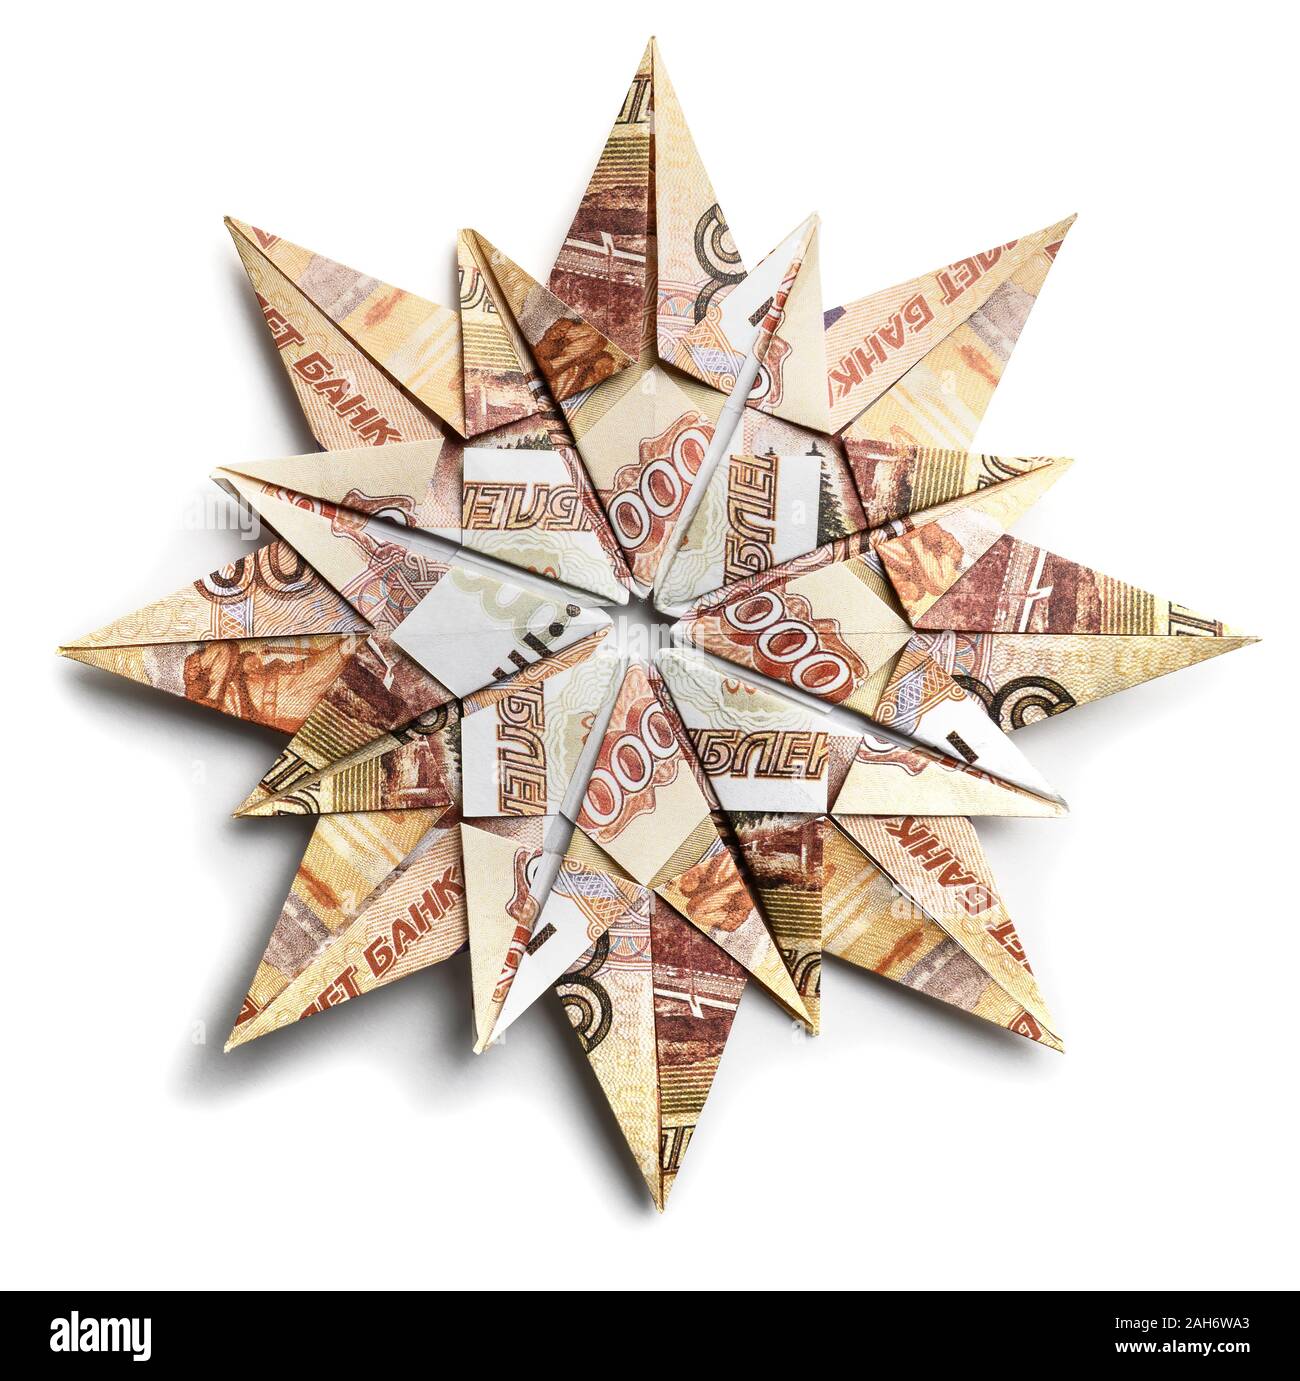 La banconota 5000 rubli sotto forma di fiocchi di neve su sfondo bianco Foto Stock